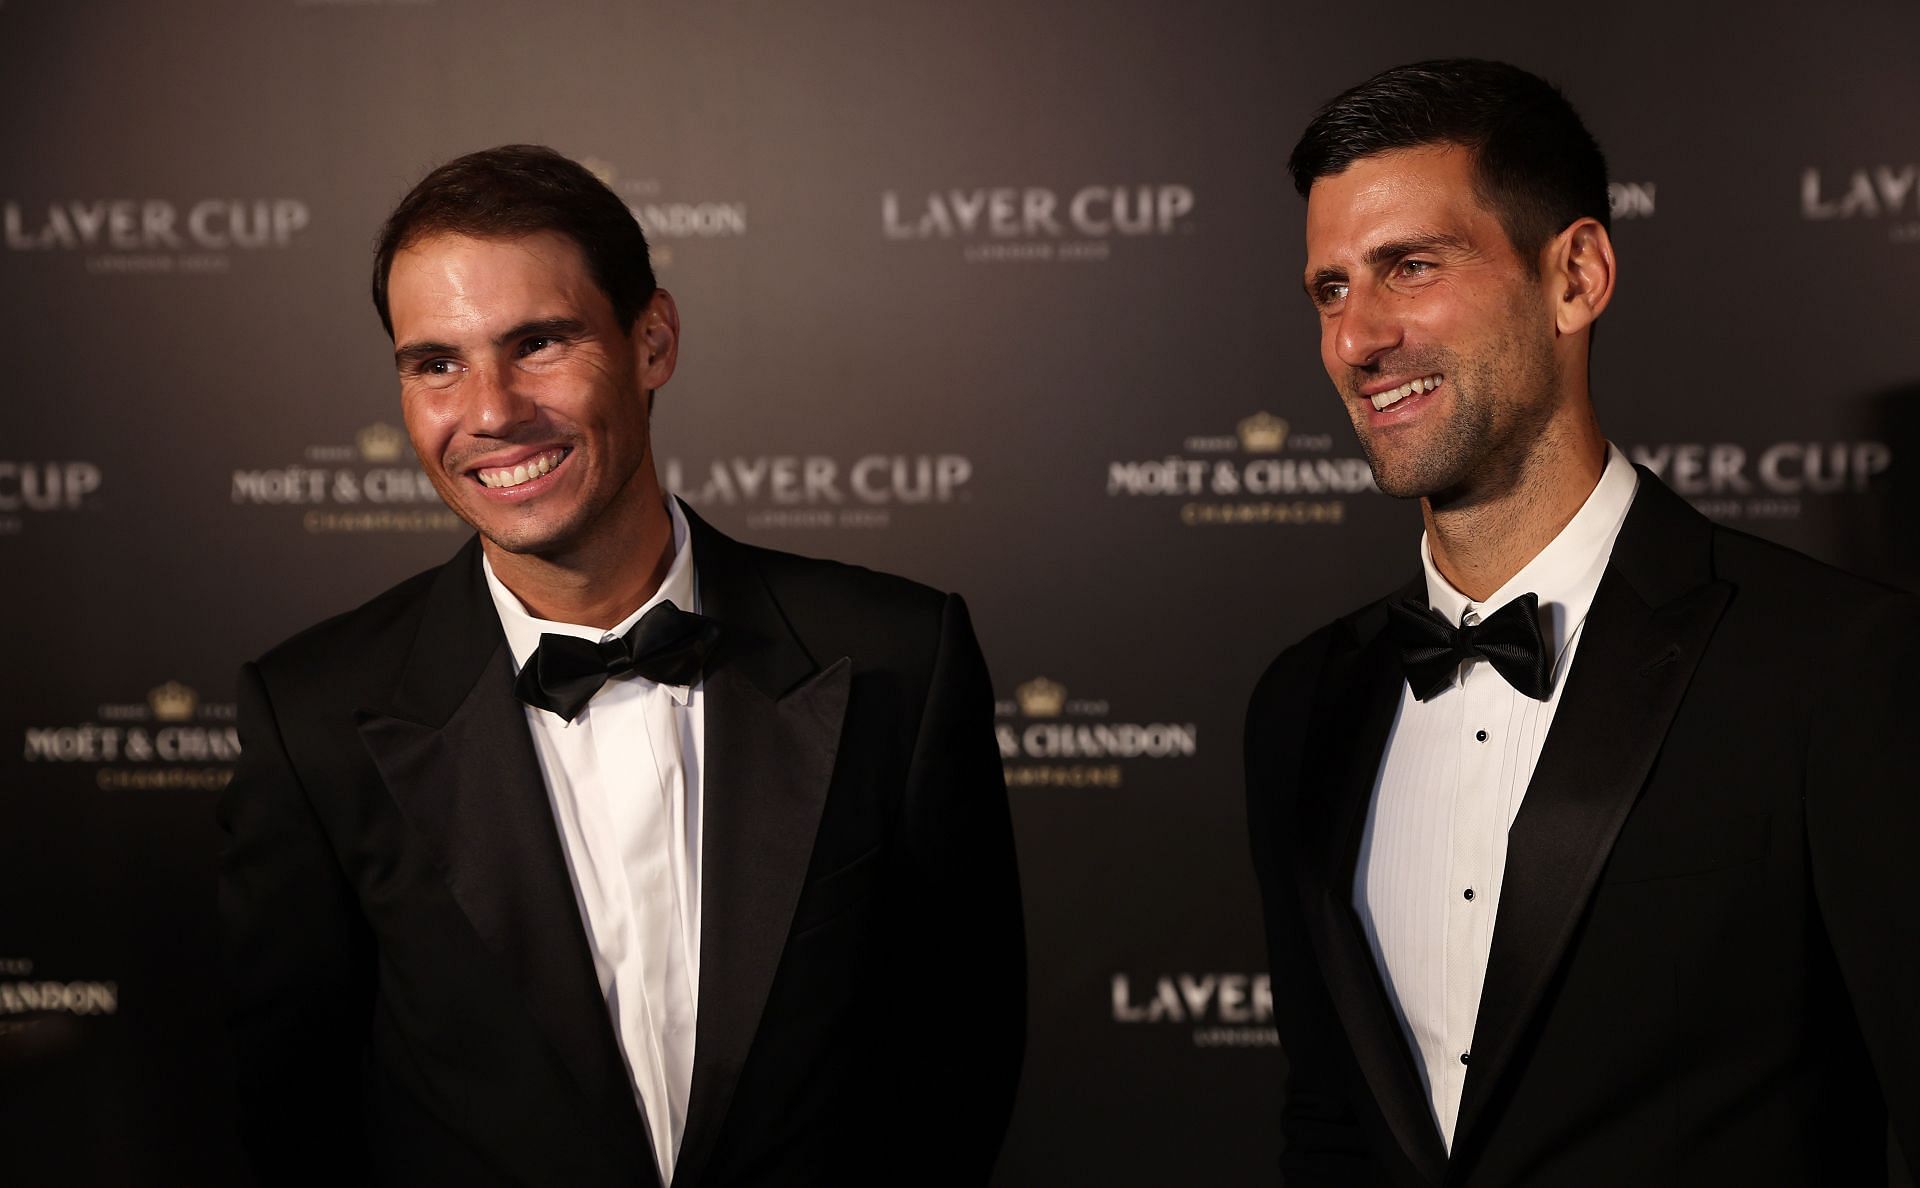 Rafael Nadal [L] and Novak Djokovic at the Laver Cup 2022